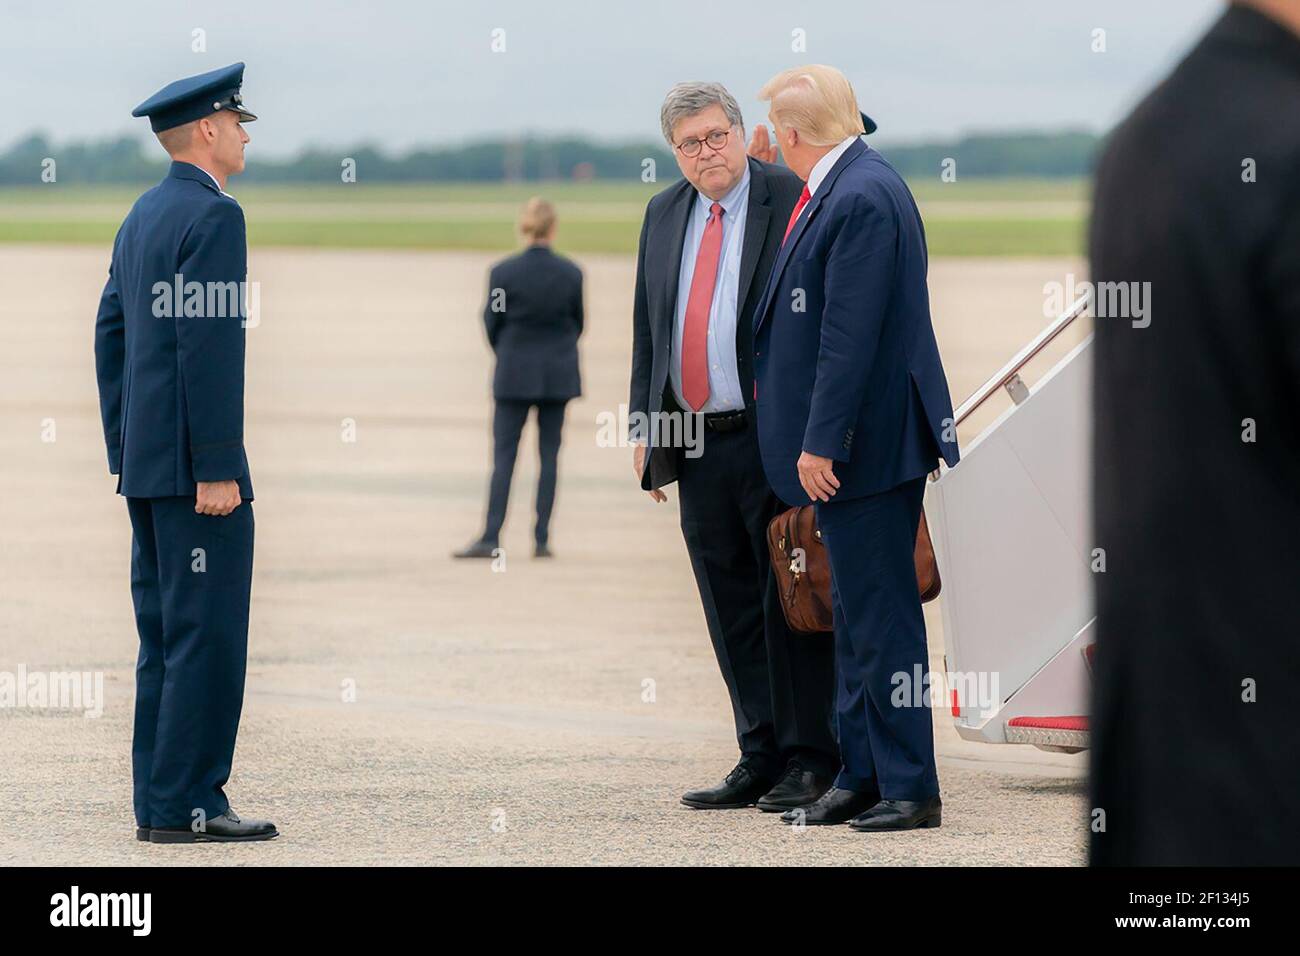 Präsident Donald Trump, der von US-Staatsanwalt William Barr sprach nach dem Aussteigen der Air Force One bei der Ankunft in der Joint Base Andrews MD. Dienstag Abend September 1 2020 Rückkehr von ihrer Reise nach Kenosha Wis. Stockfoto